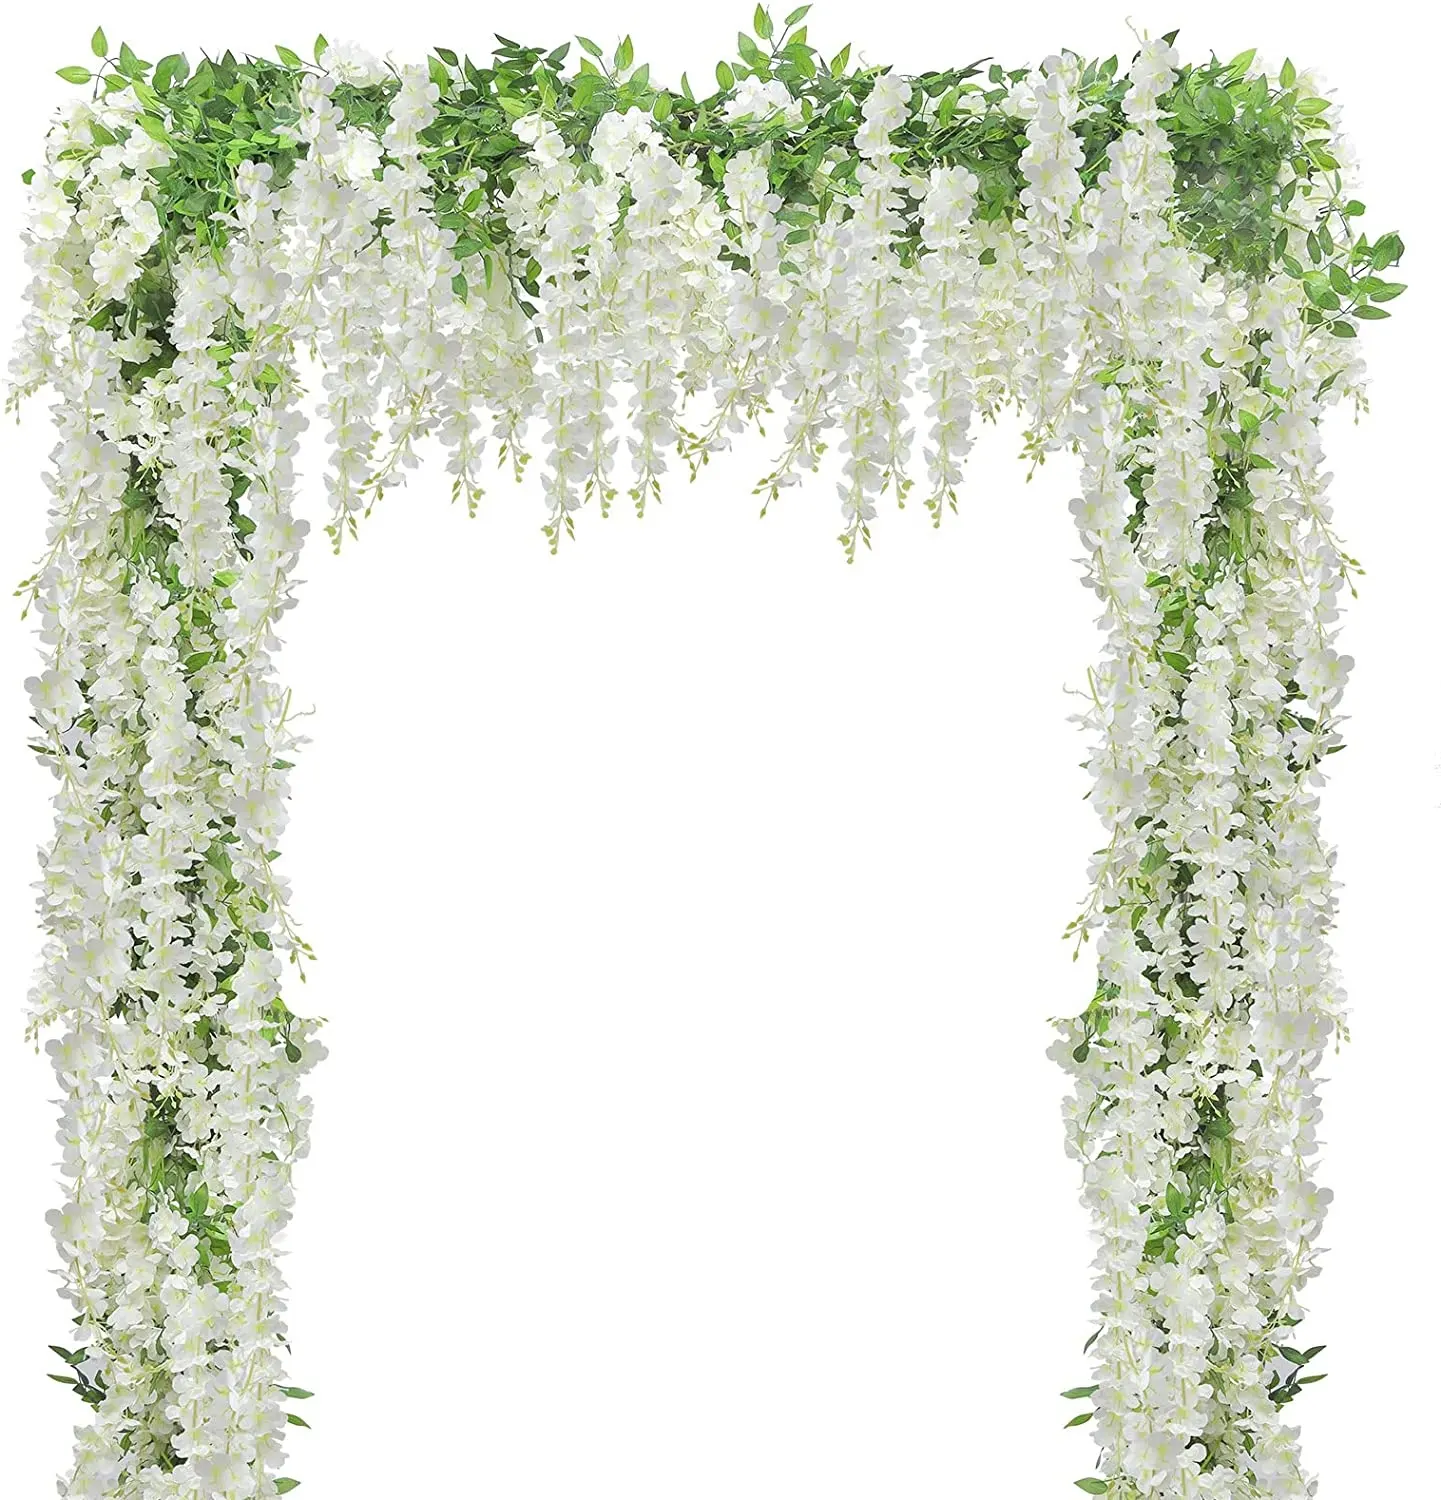 Karangan bunga lengkungan buatan Wisteria Garland bunga gantung Wisteria ungu putih dekorasi lengkungan pernikahan taman rumah